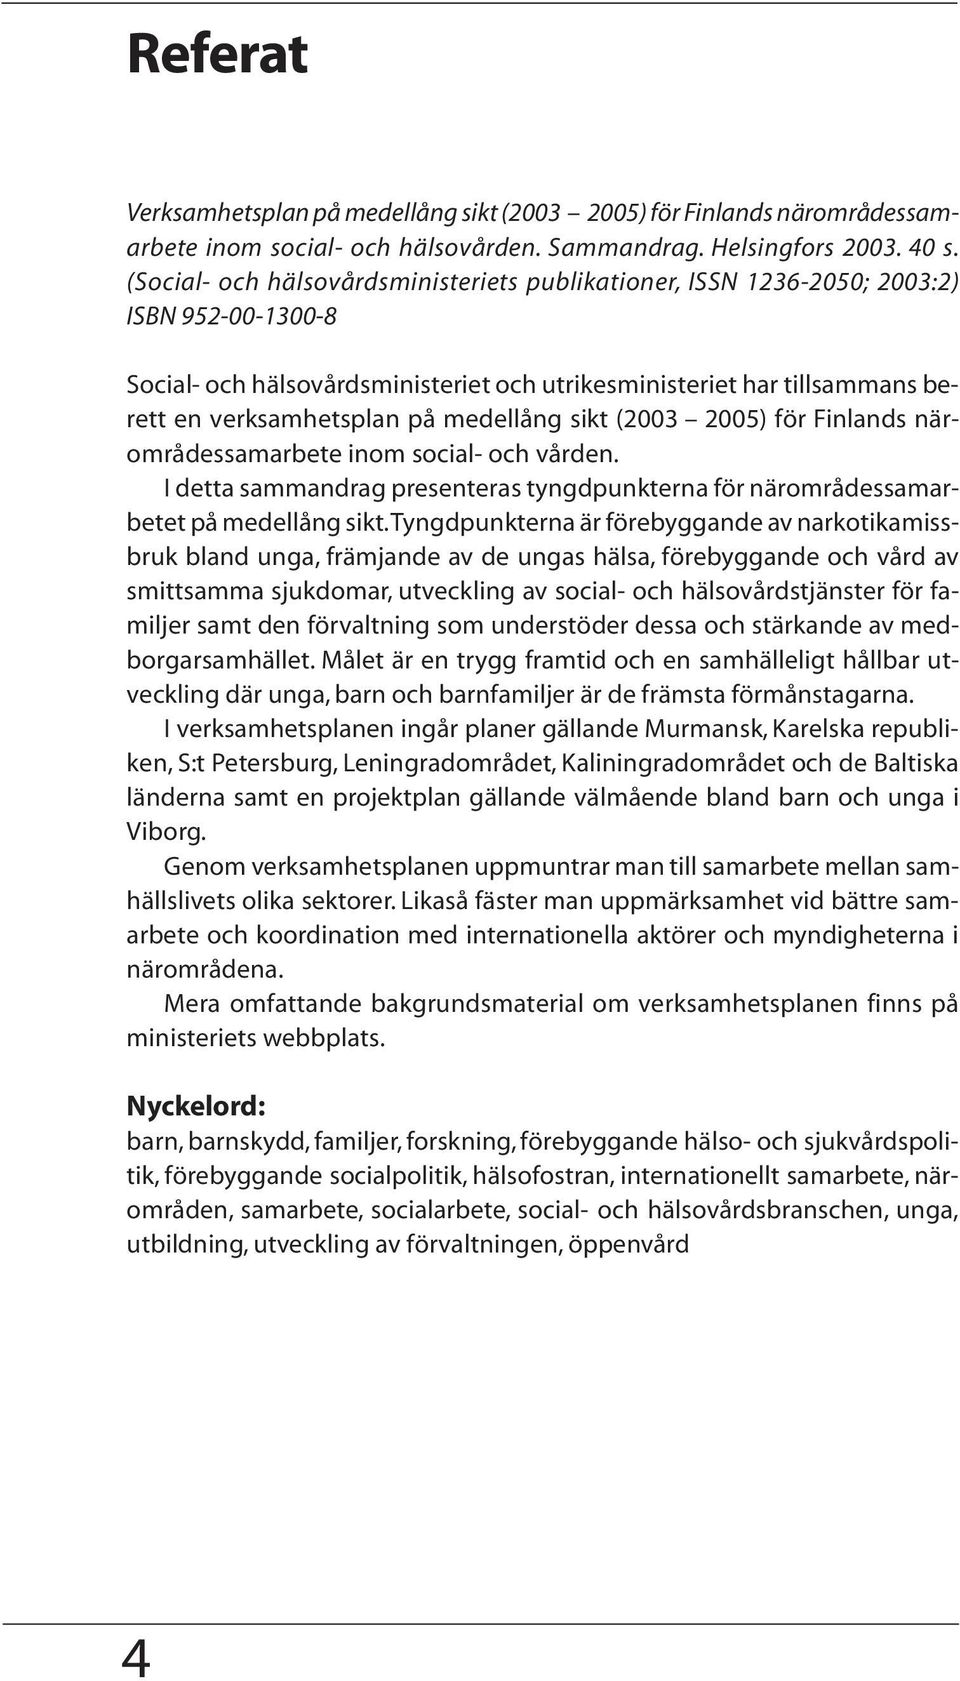 medellång sikt (2003 2005) för Finlands närområdessamarbete inom social- och vården. I detta sammandrag presenteras tyngdpunkterna för närområdessamarbetet på medellång sikt.